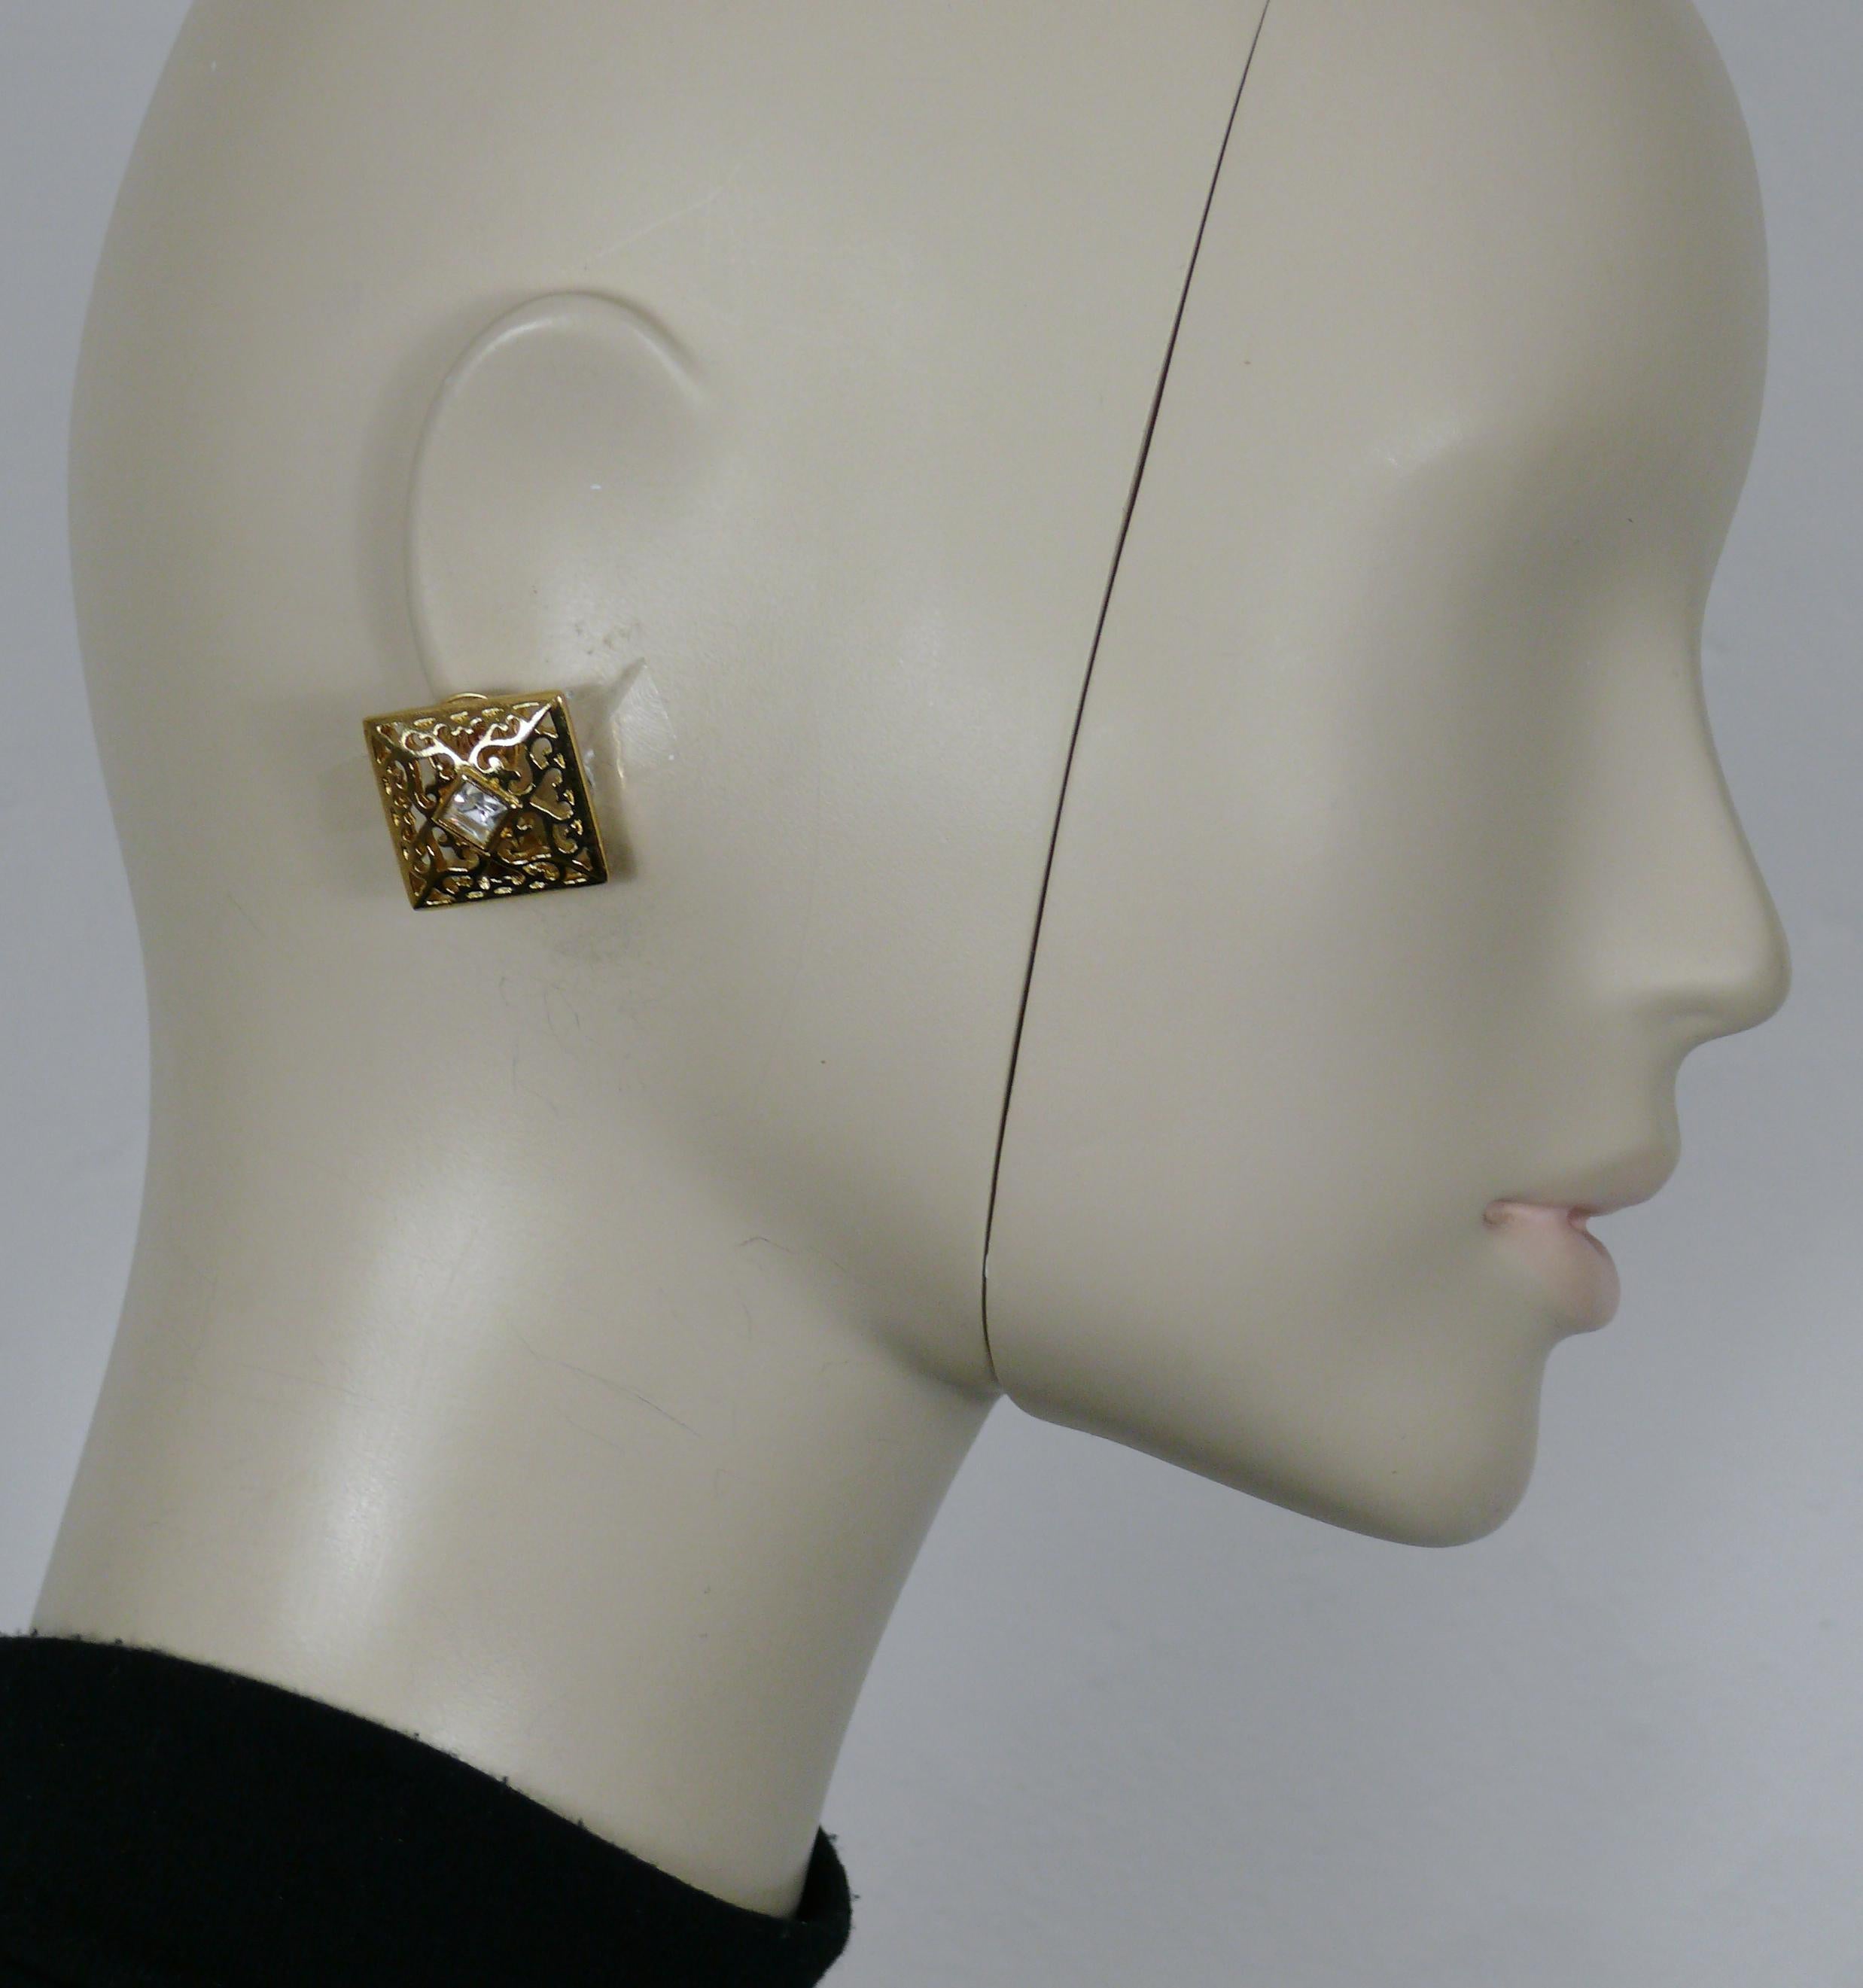 YVES SAINT LAURENT durchbrochene Ohrringe in Goldton, die in der Mitte mit einem klaren Kristall verziert sind.

Geprägtes YSL.

Ungefähre Maße: Höhe ca. 2,3 cm (0,91 inch) / Breite ca. 2,4 cm (0,94 inch).

Gewicht pro Ohrring: ca. 5